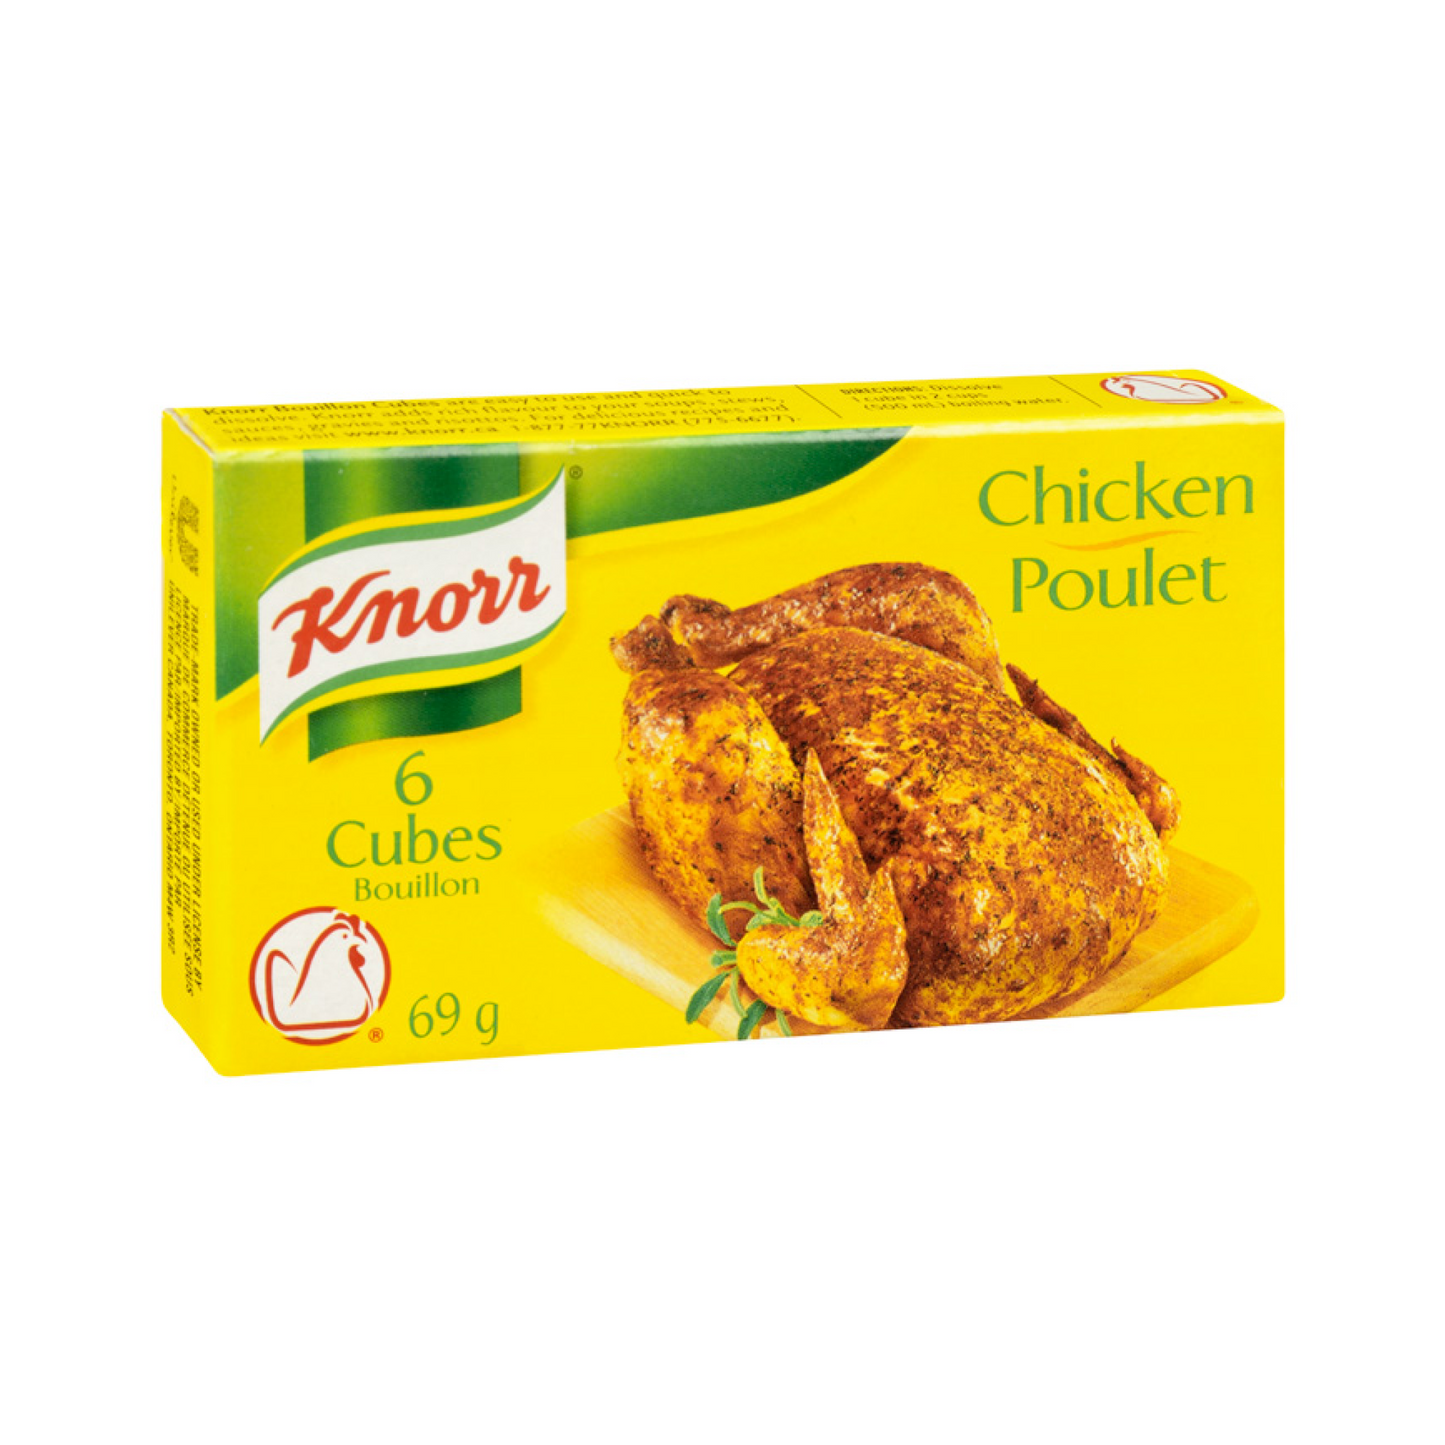 Knorr Chicken 6 Cubes 69g